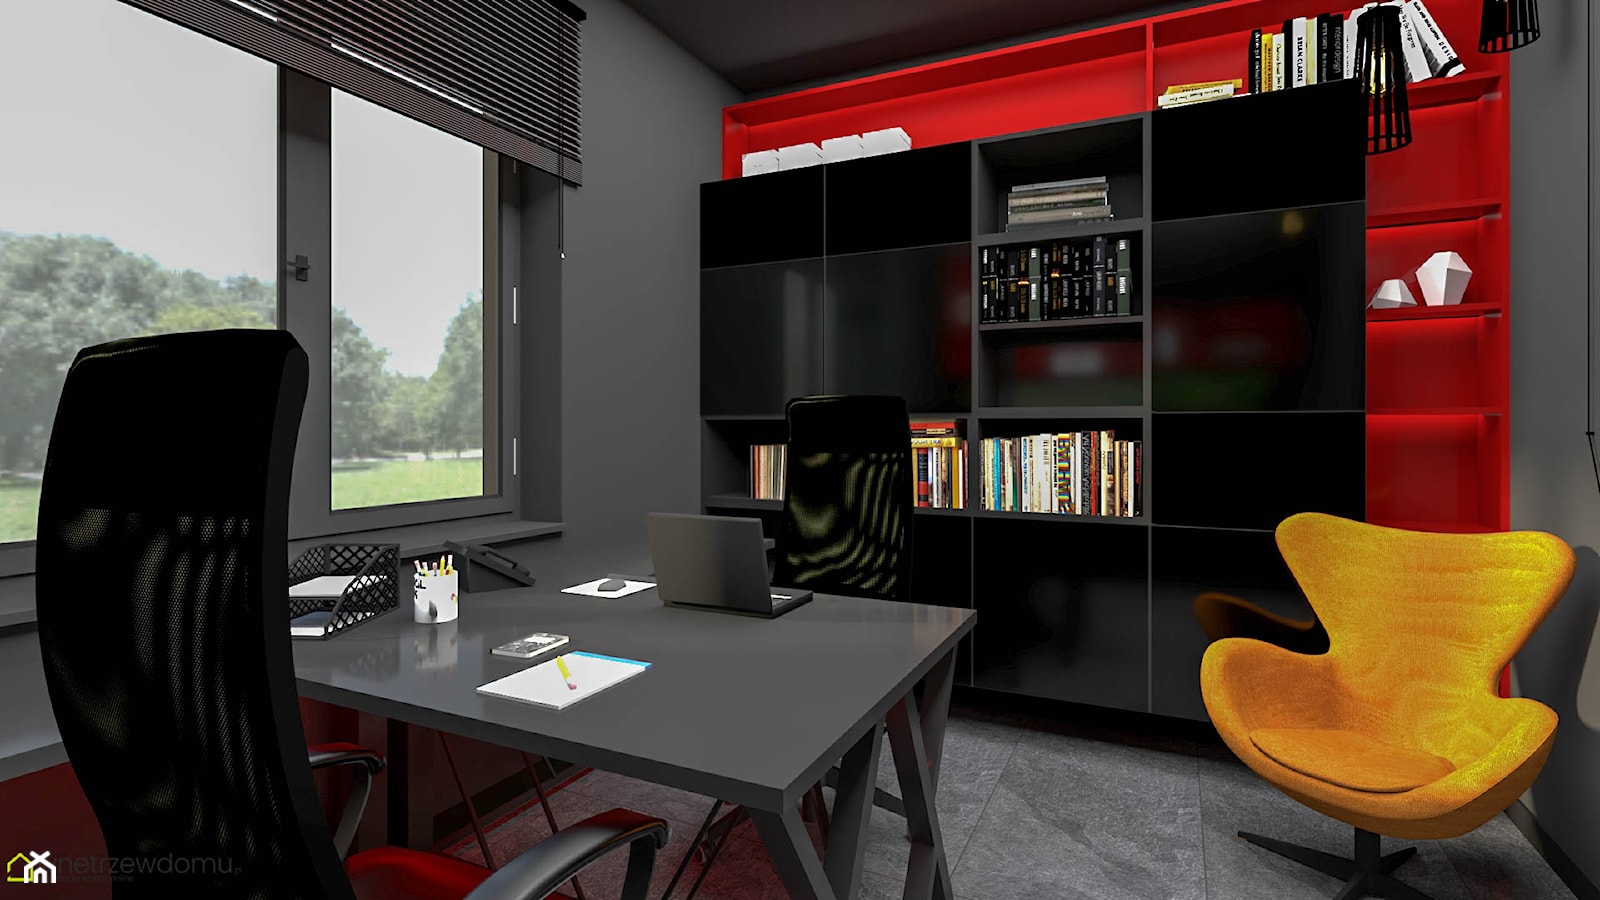 Gabinet w kolorach czerni z dodatkiem czerwieni - zdjęcie od wnetrzewdomu - Homebook